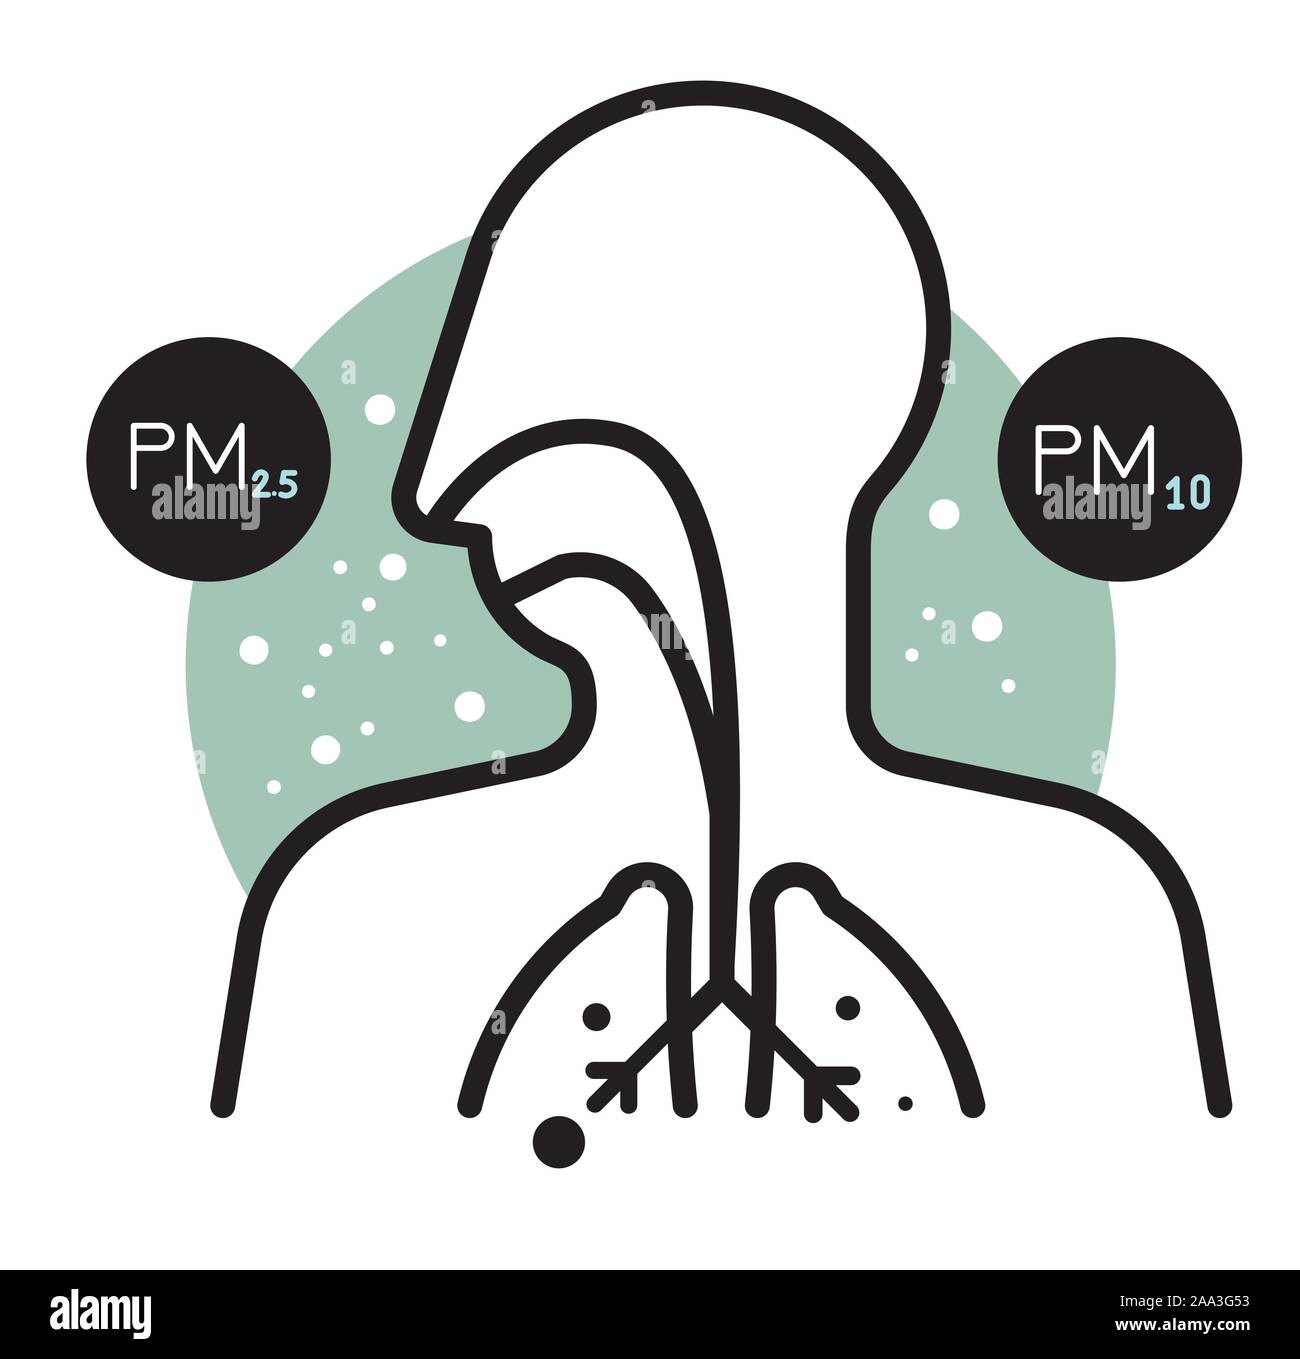 Effet des particules PM 10 et 2,5 sur la pollution de l'organisme humain - comme l'icône de fichier EPS 10 Illustration de Vecteur